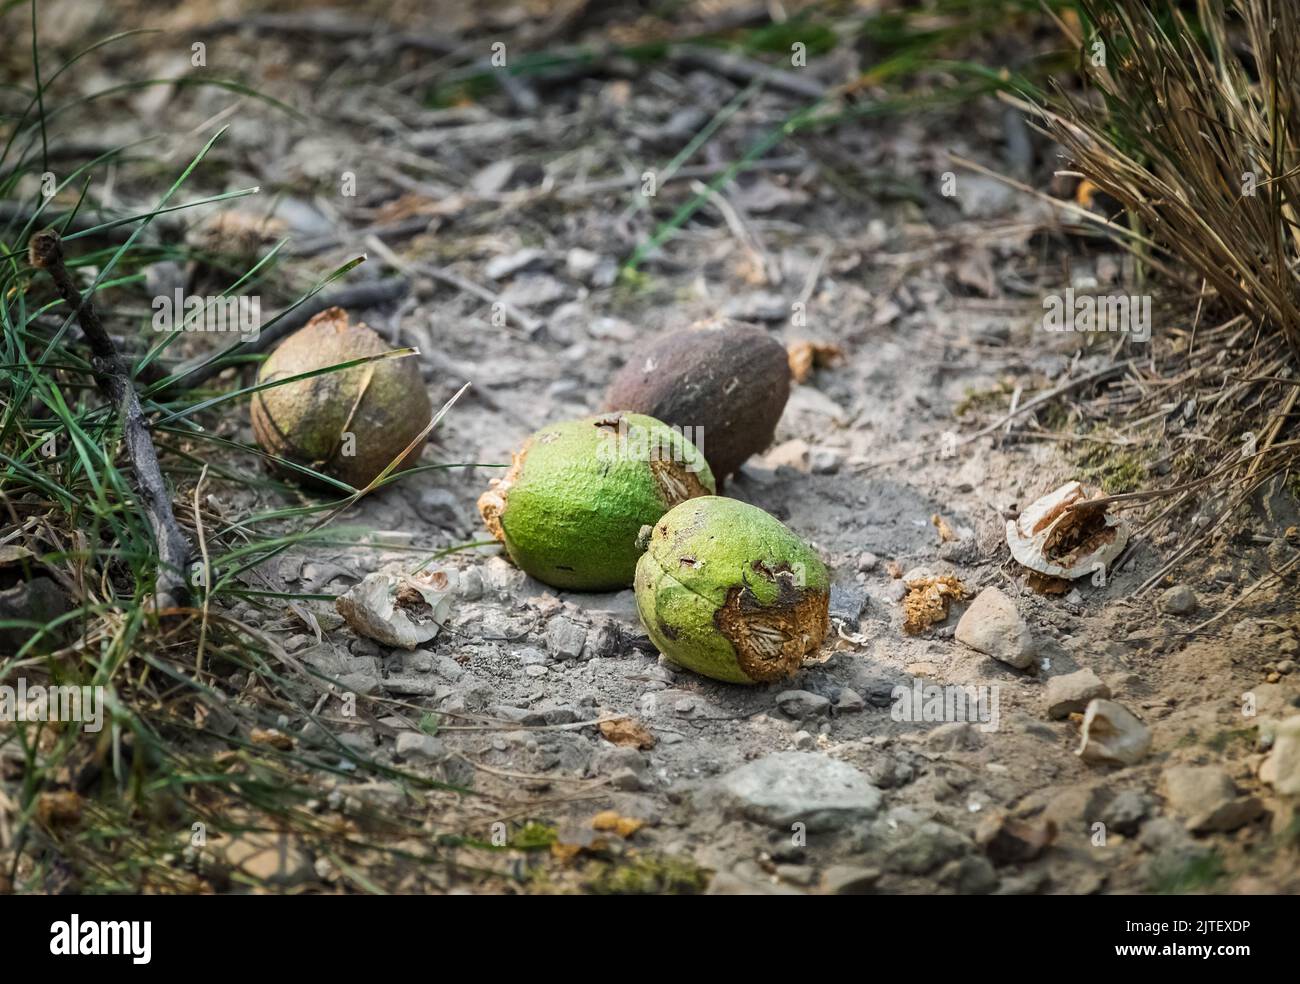 Vier wilde Hickory-Nüsse, carya, liegen auf einem Waldweg Boden, nachdem sie von Eichhörnchen im Spätsommer oder Herbst aufgeritzt wurden, Lancaster, Pennsylvania Stockfoto